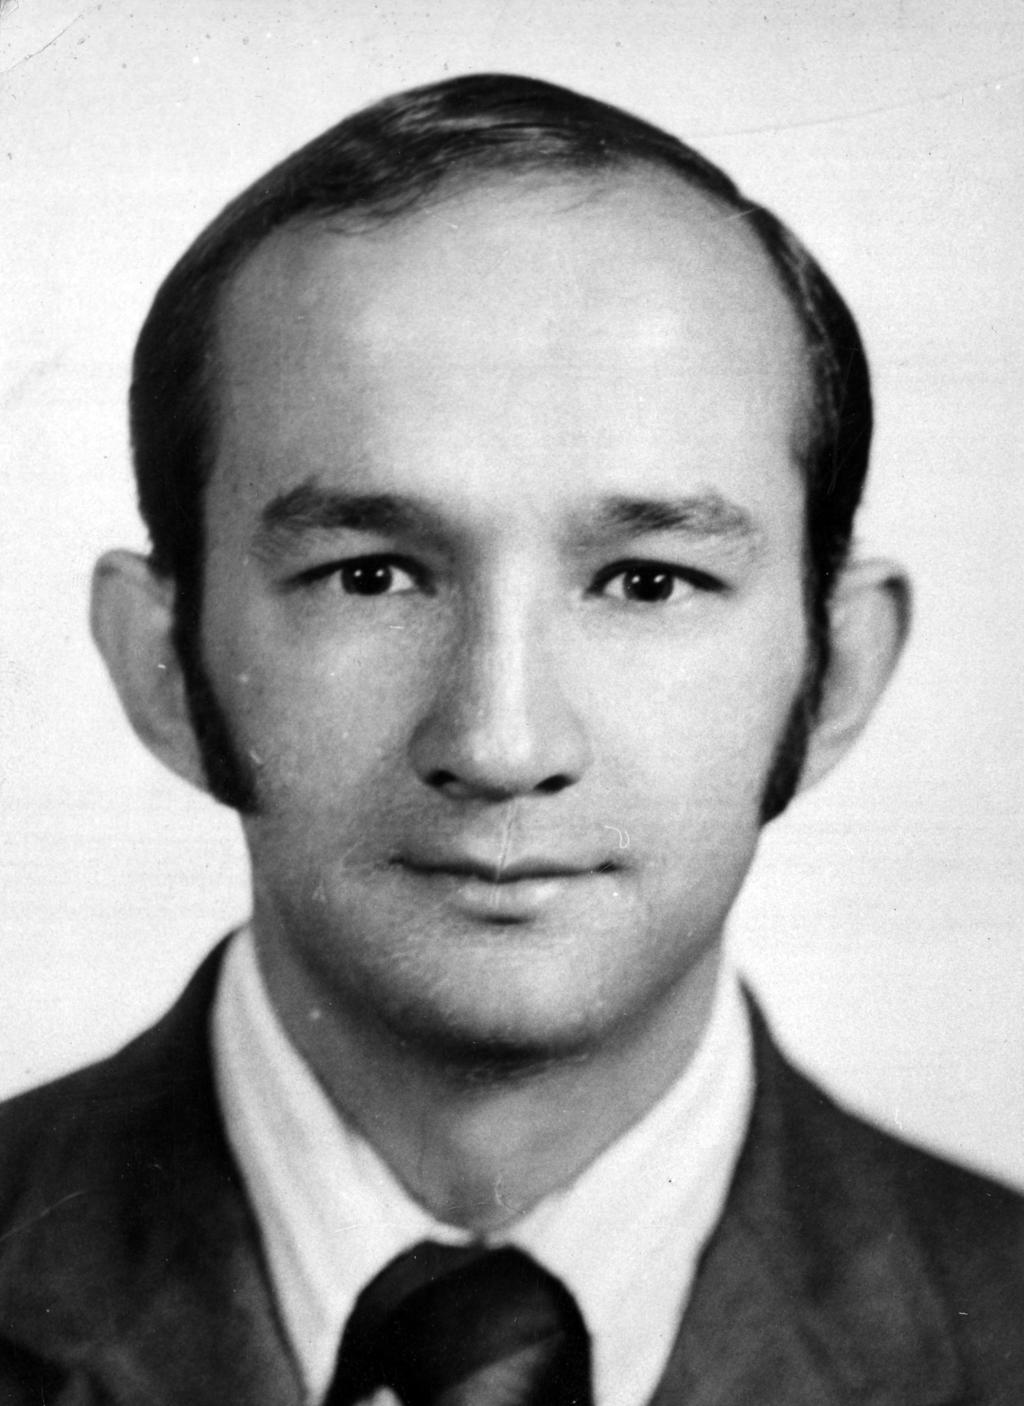 En el documento, el cual incluye una fotografía de Salinas de Gortari joven, se indica que practicó su servicio social como profesor adjunto en la Escuela Nacional de Economía de la UNAM. (EL UNIVERSAL)